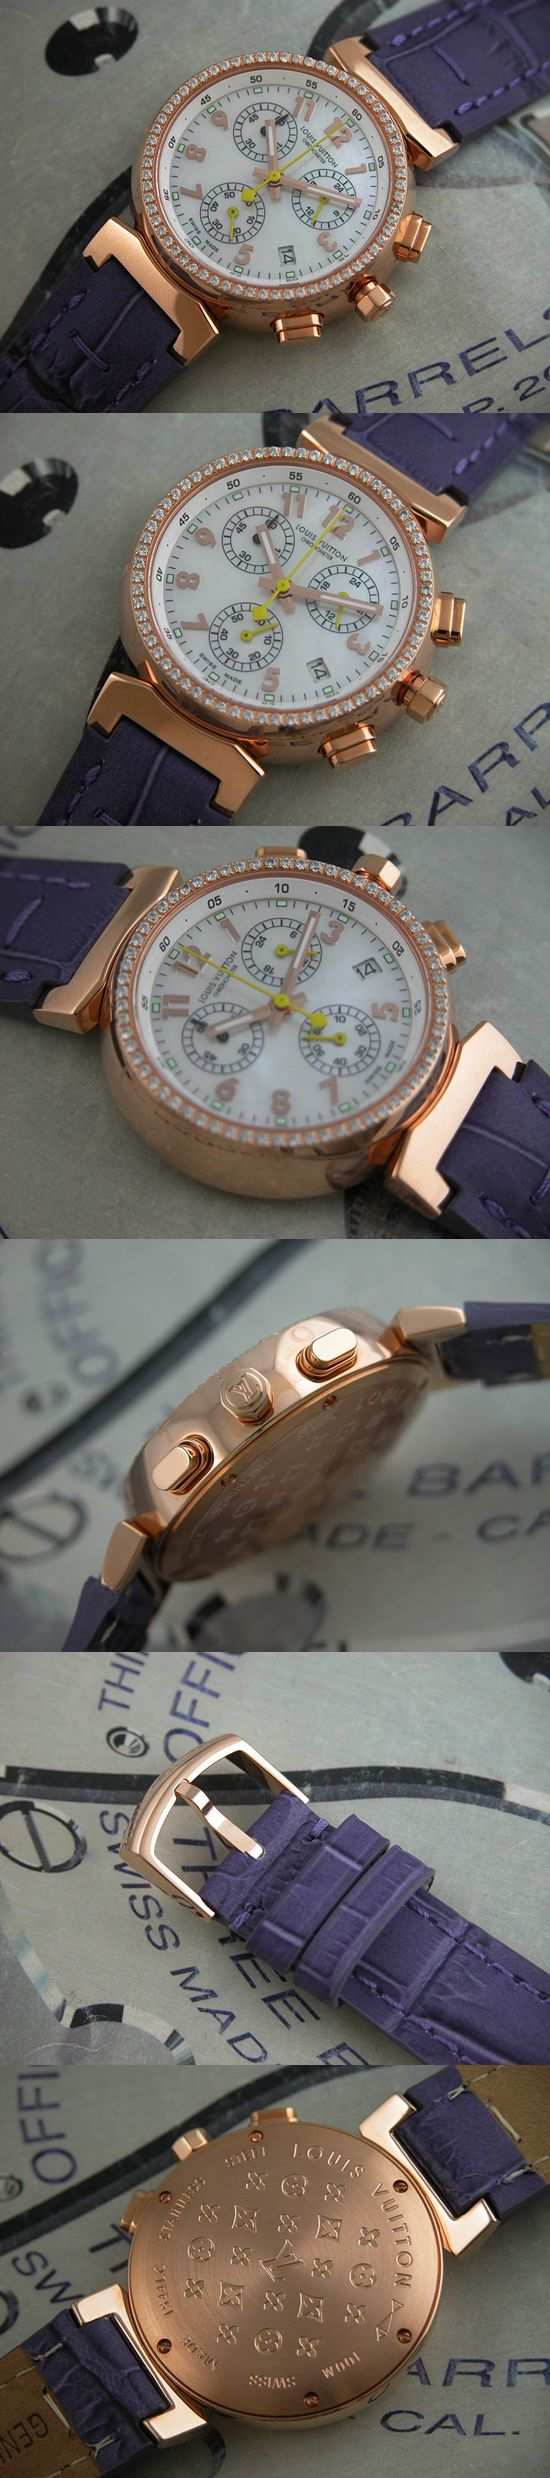 おしゃれなブランド時計がルイヴィトン-タンブール-LOUIS VUITTON-LV00013S-女性用を提供します.